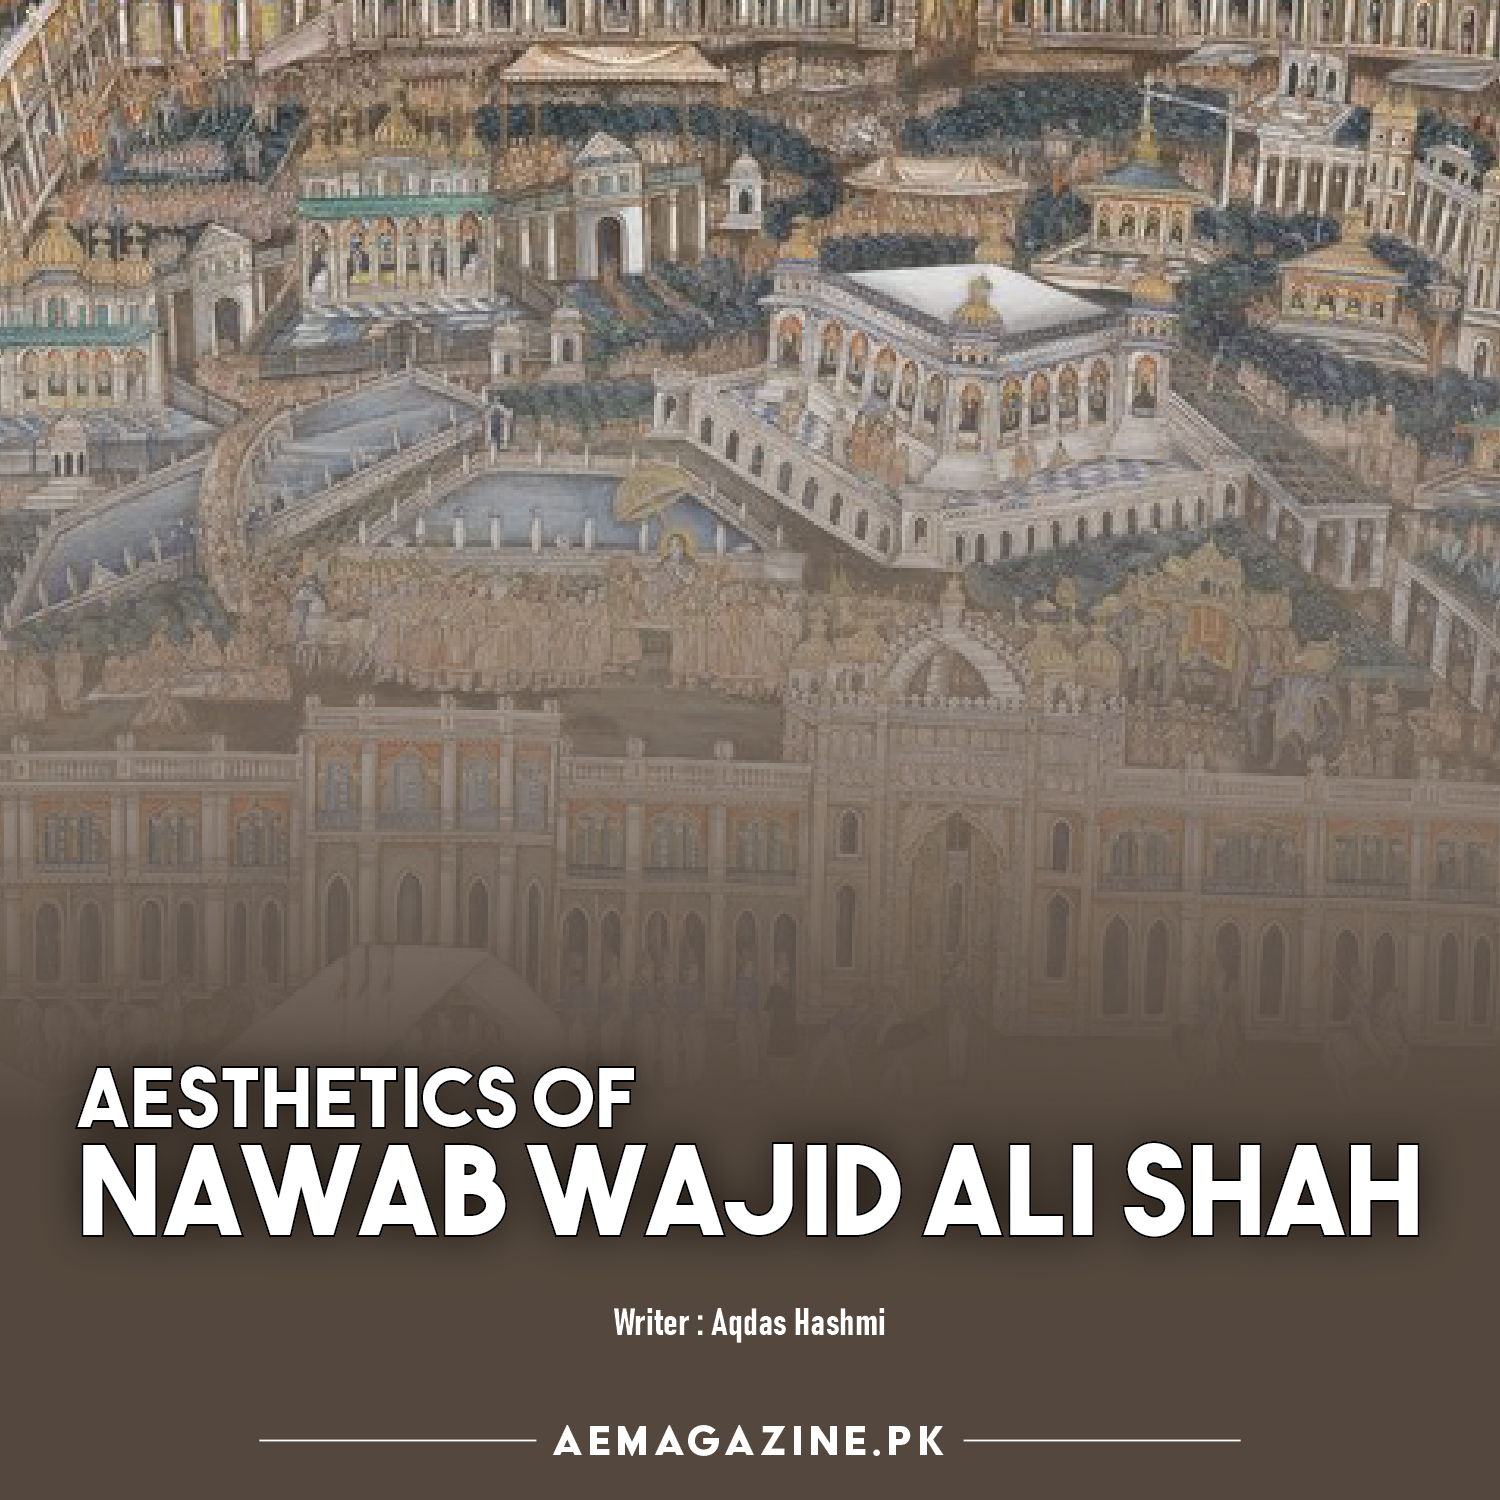 Aesthetics of Nawab Wajid Ali Shah